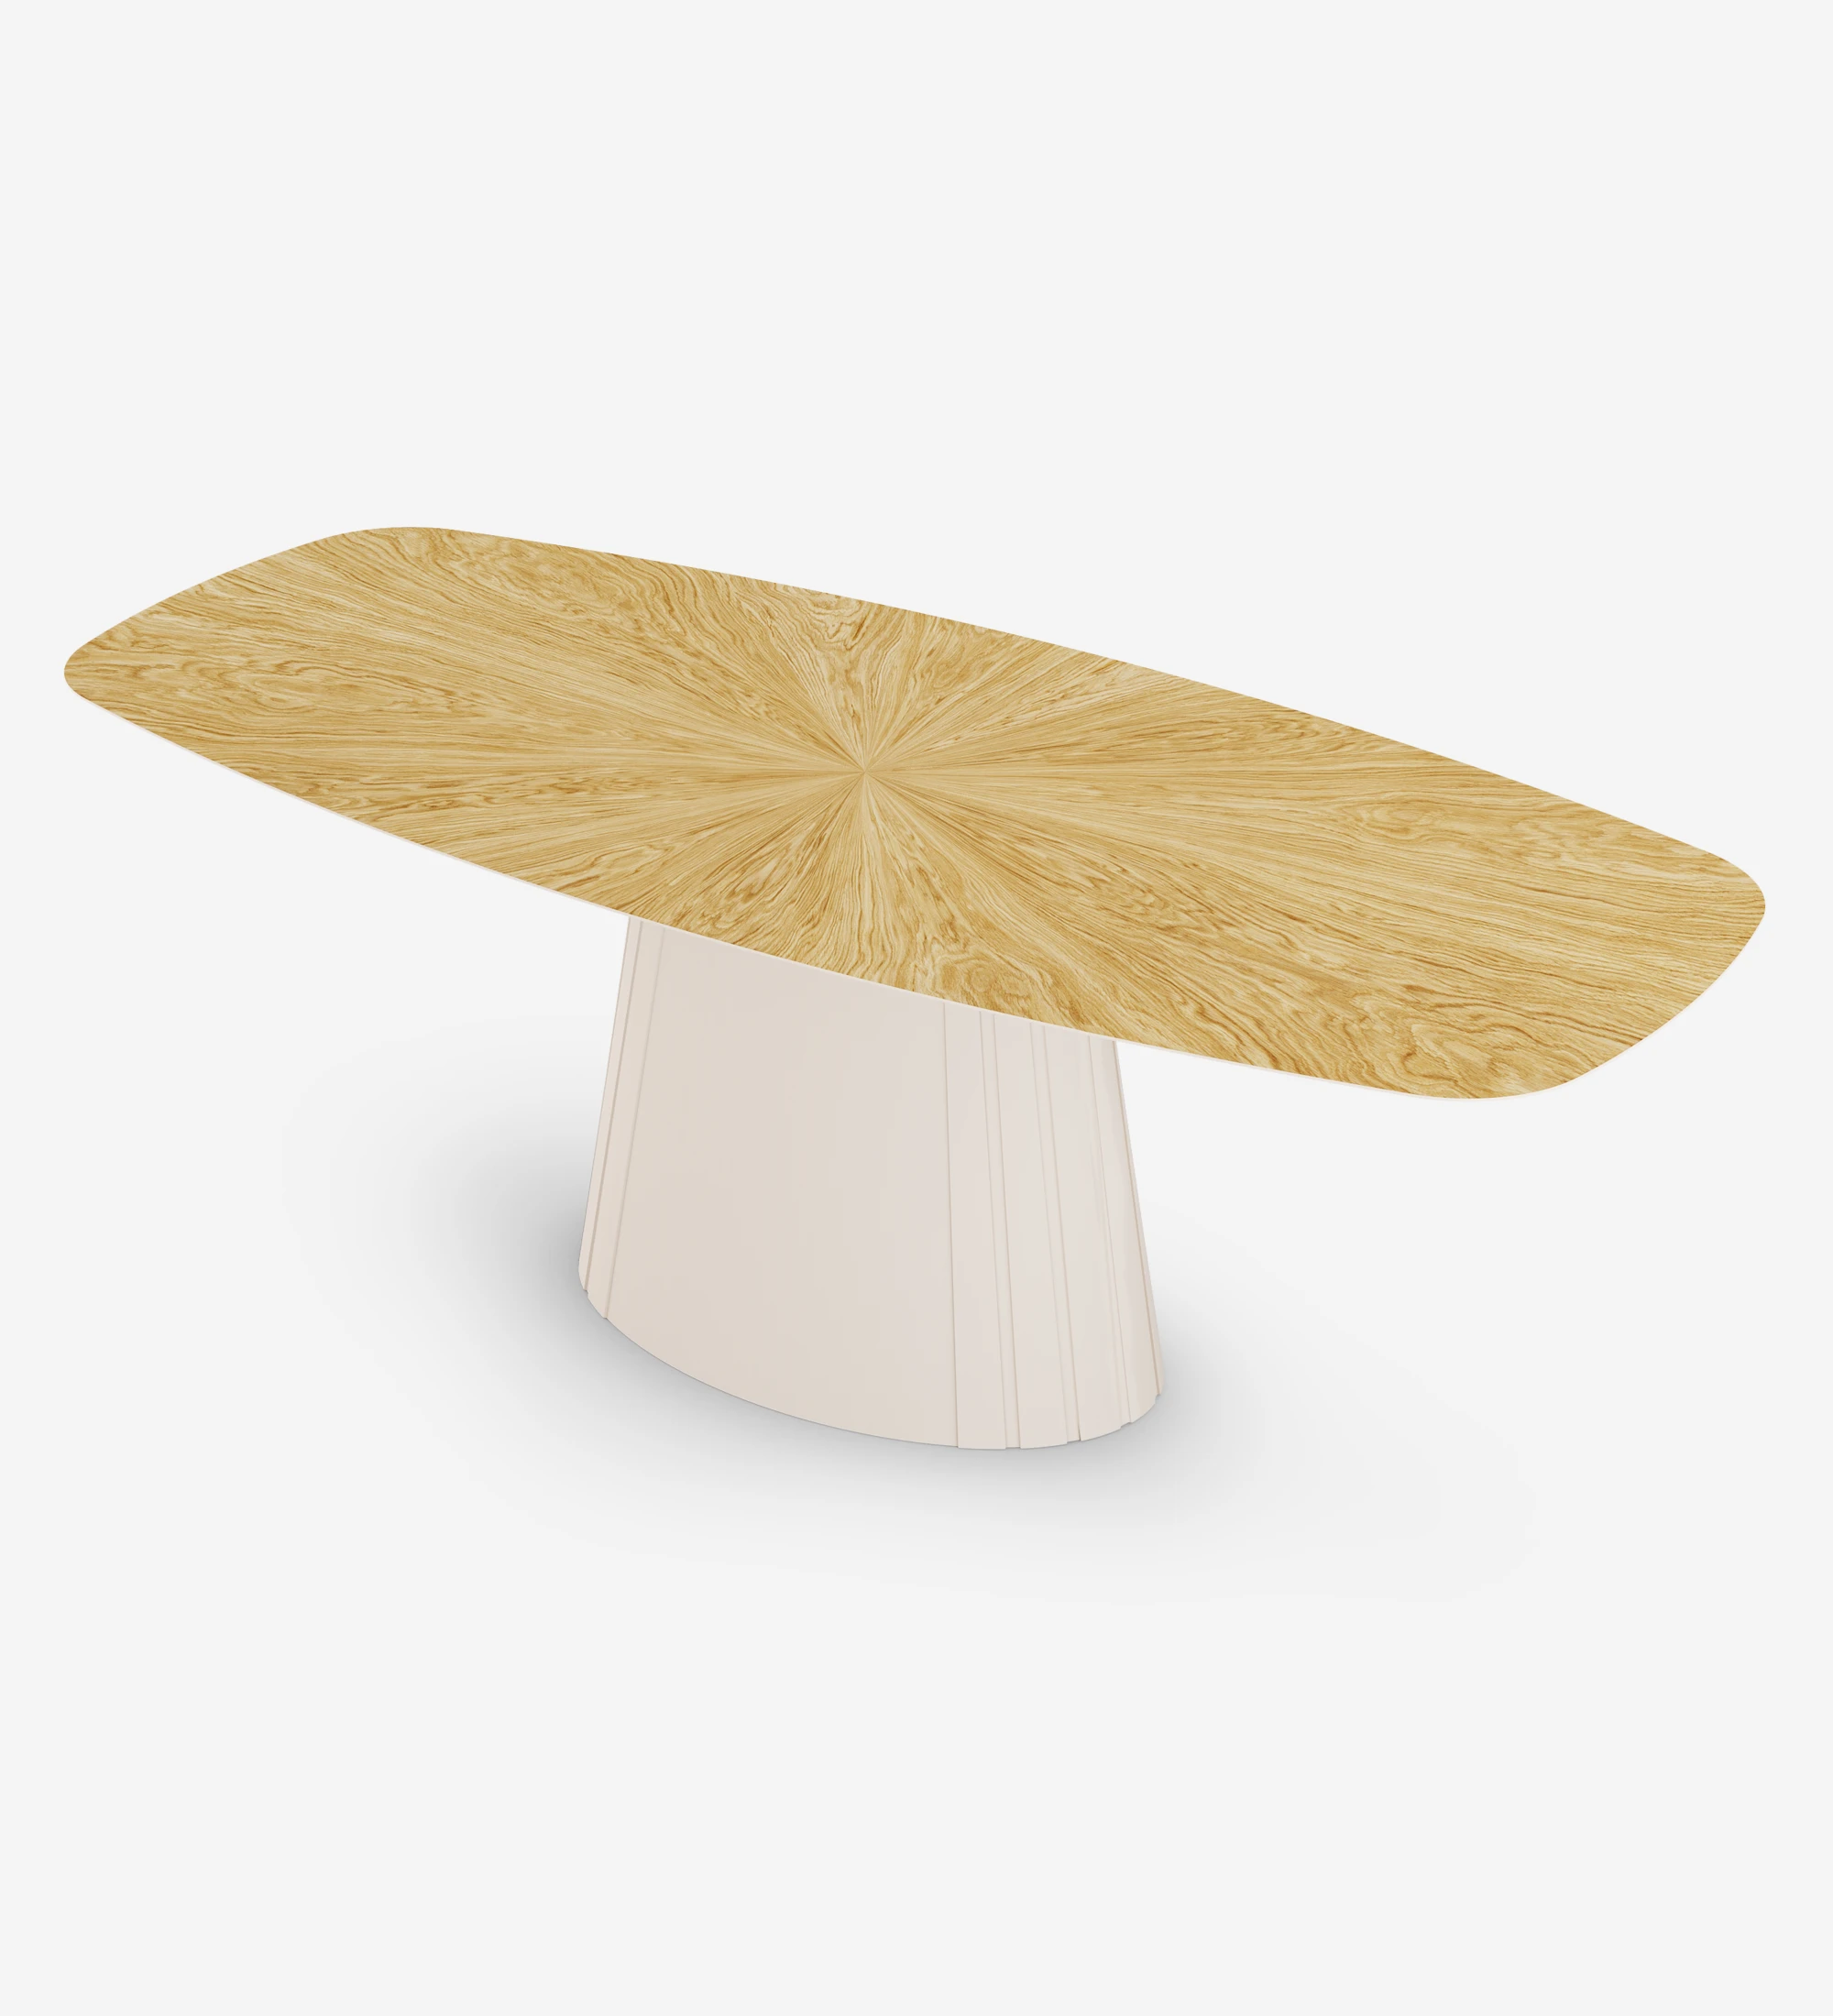 Table de repas ovale Cannes 250 x 110 cm, plateau en chêne naturel, pied laqué perle.